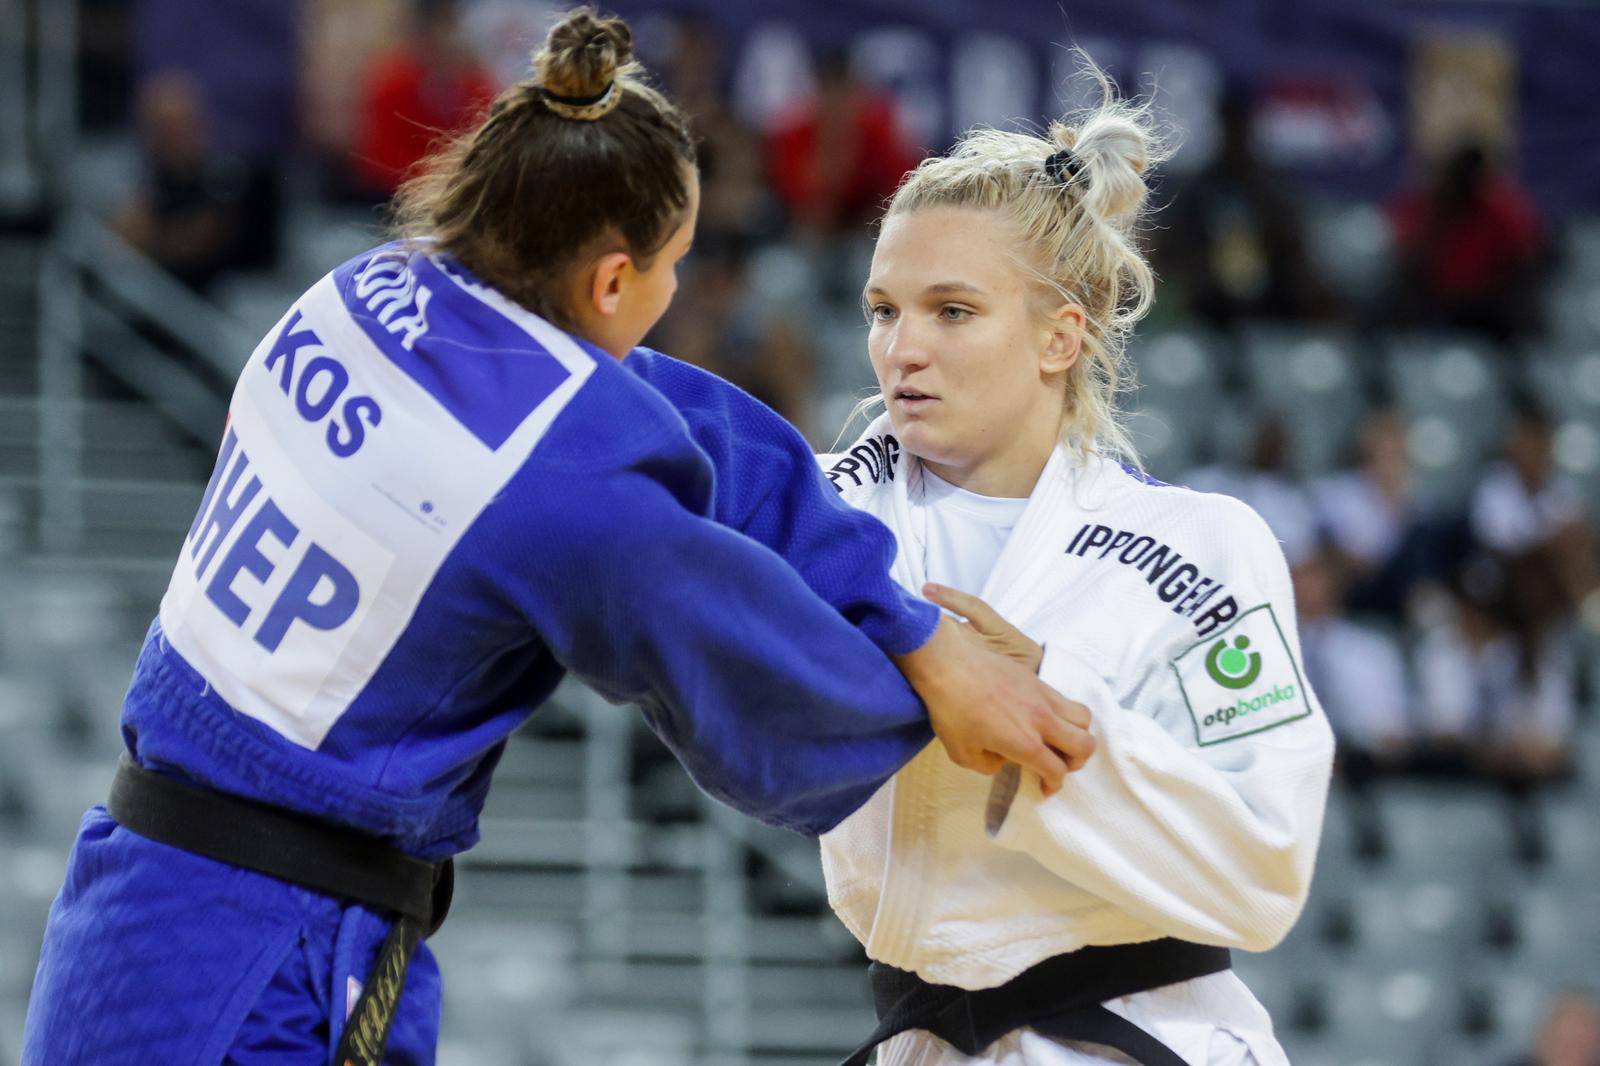 IJF World Judo Tour Zagreb Grand Prix, žene do 63 kg, Lara Cvjetko - Loriana Kuka